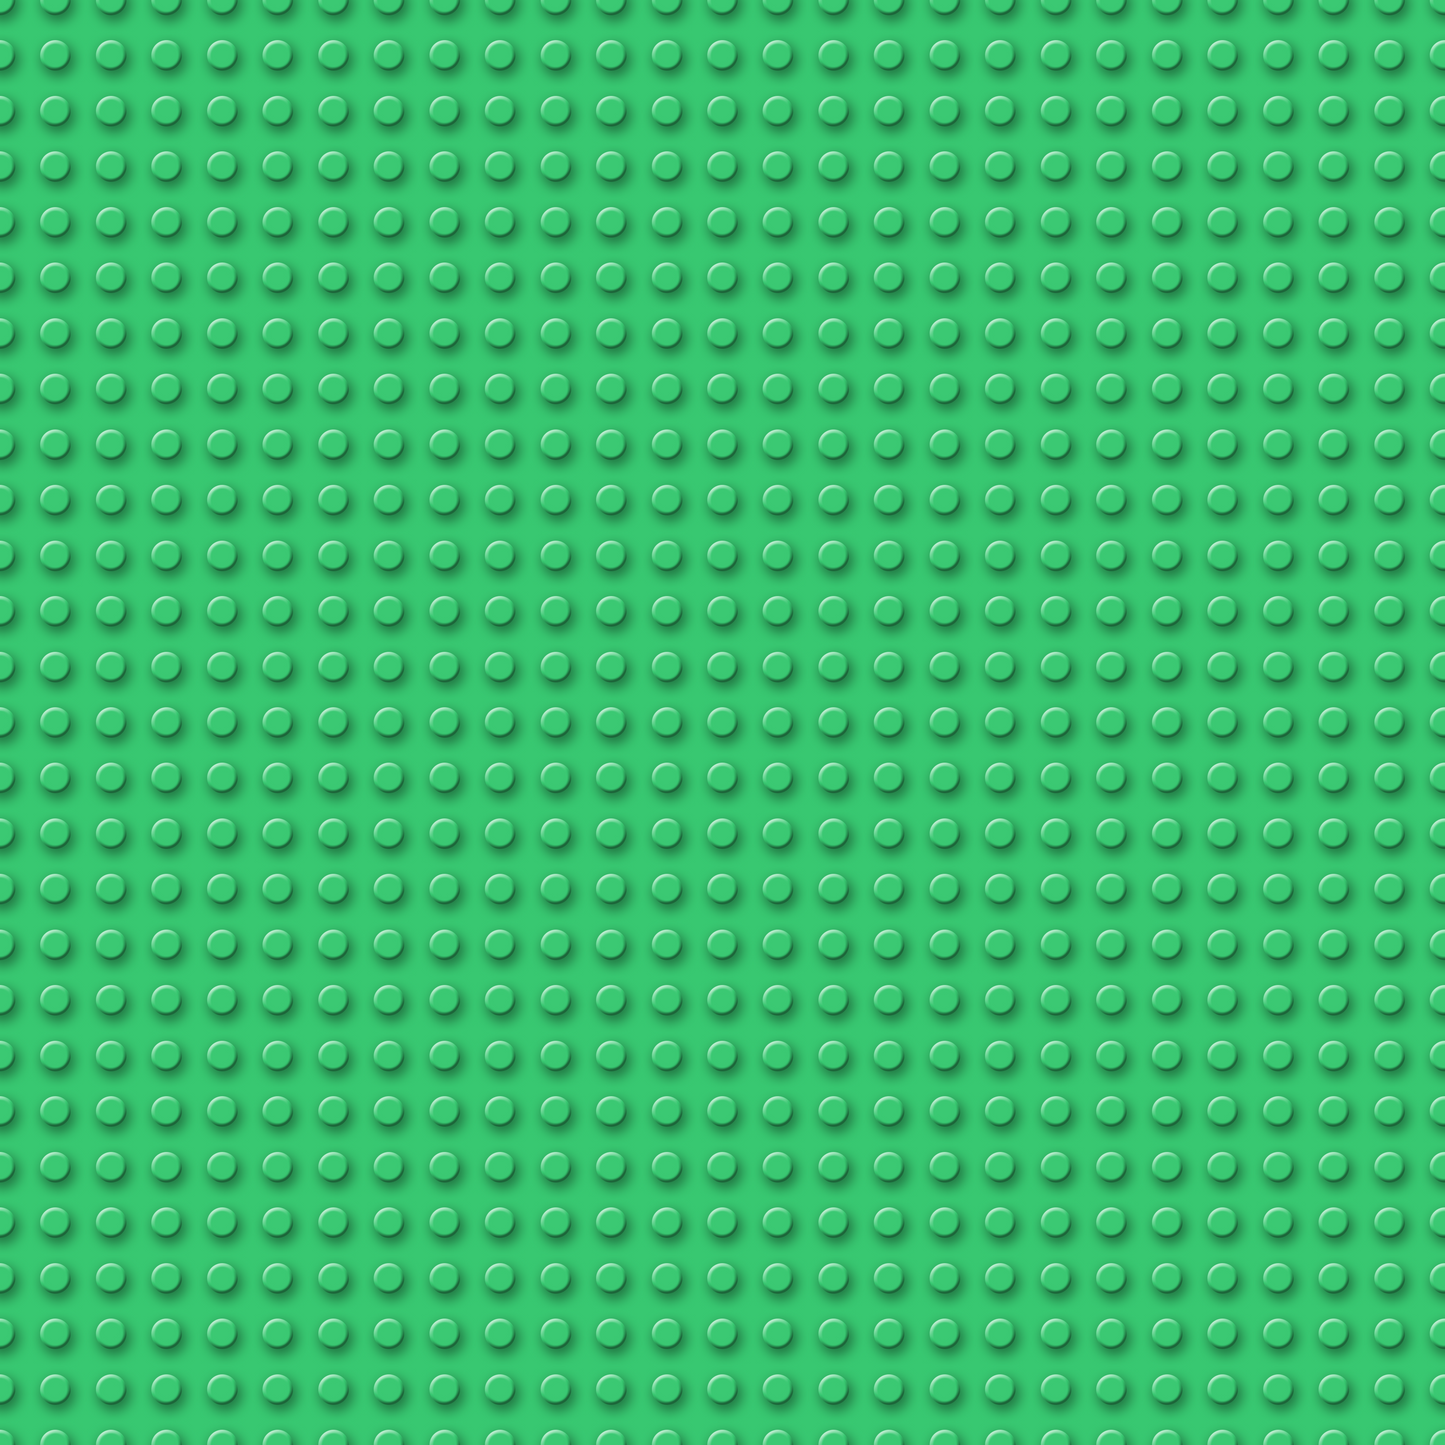 Building Blocks - Light Green - 049